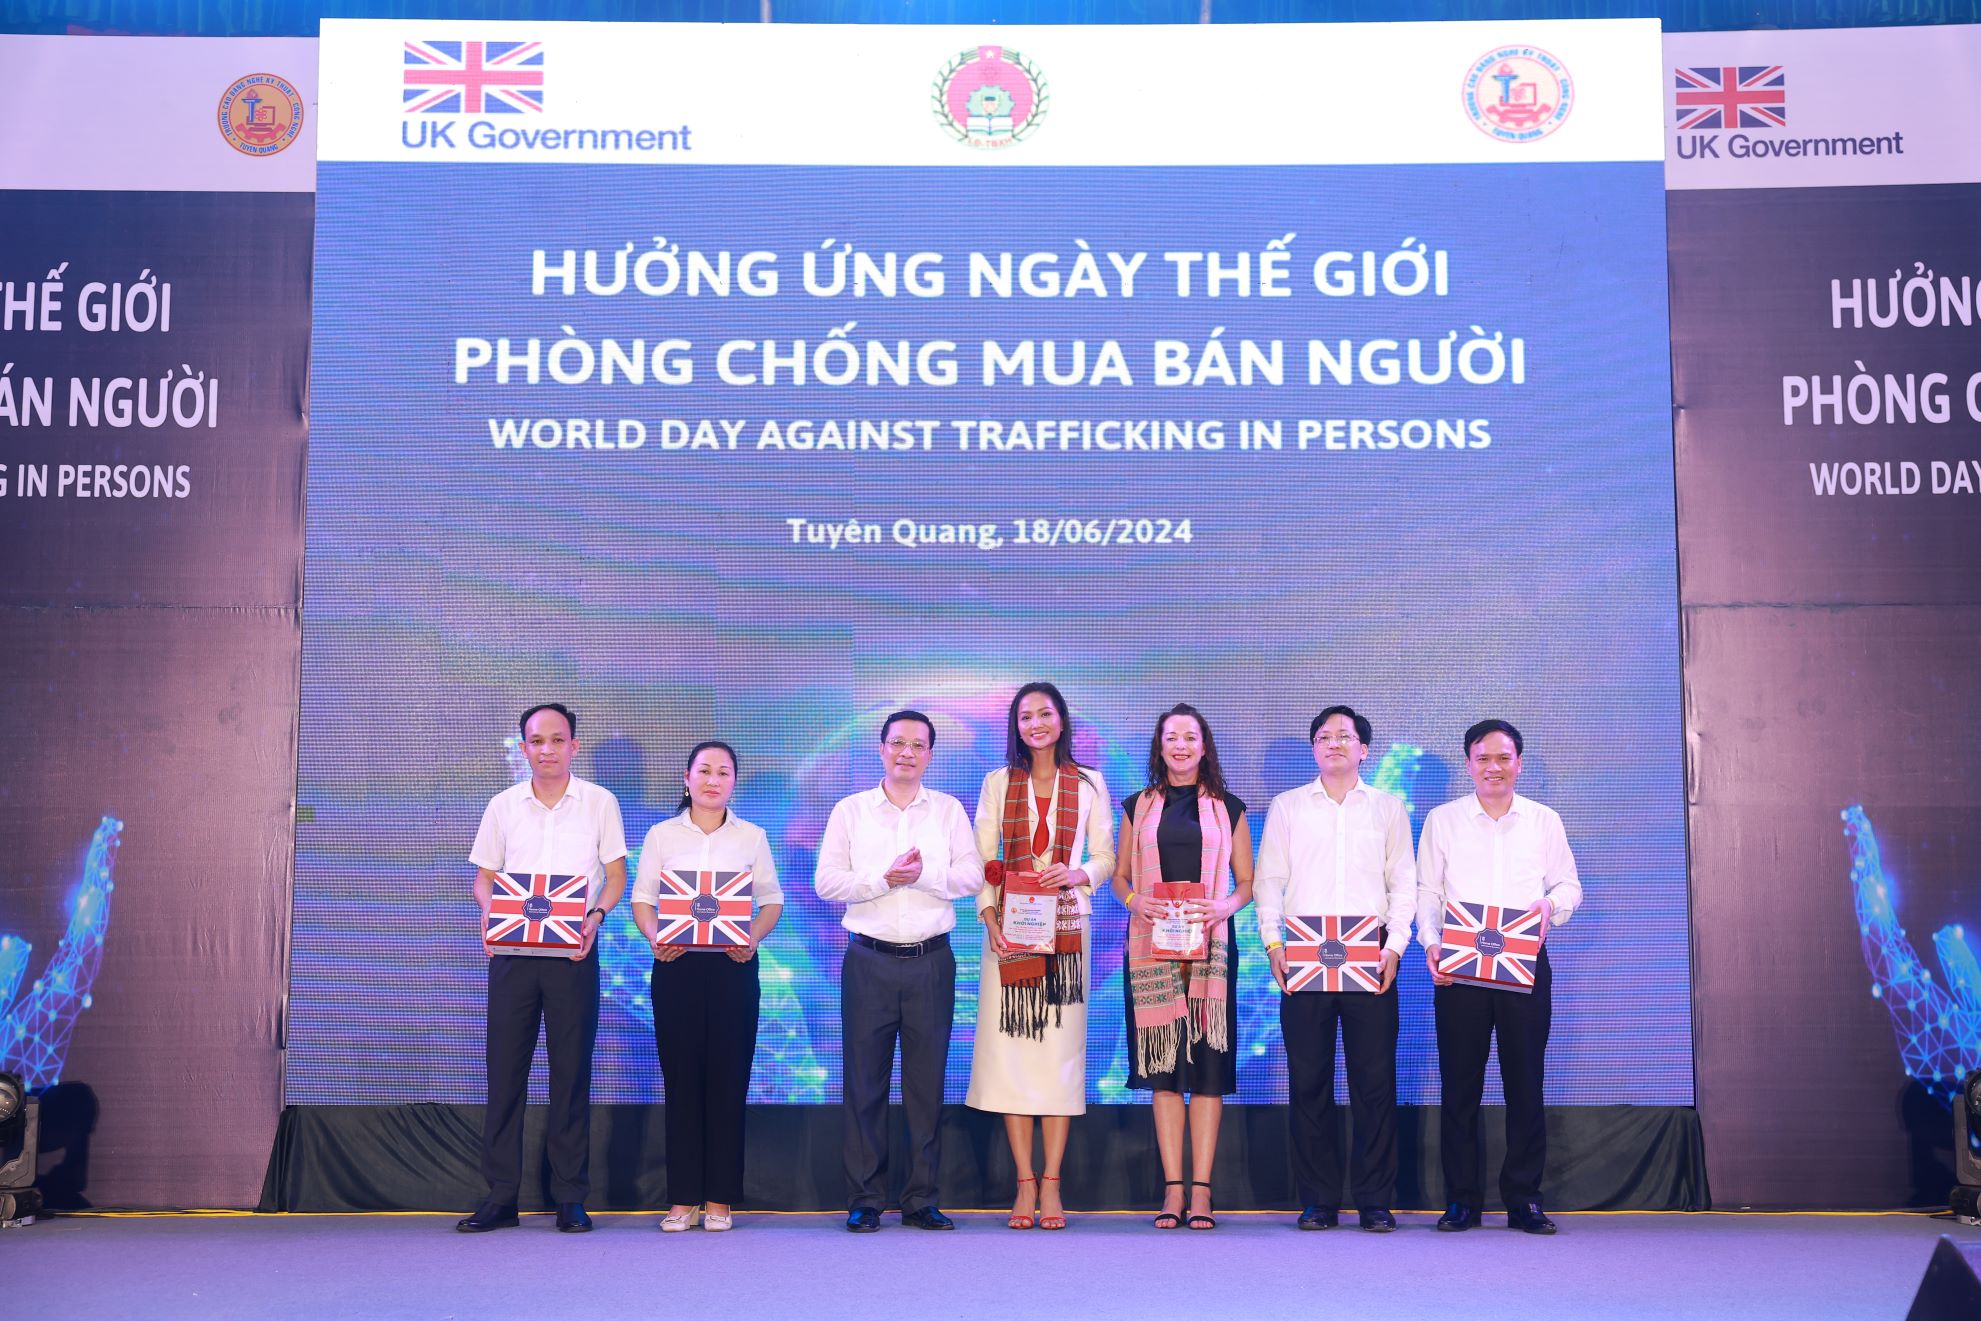 Chính phủ Anh cam kết tiếp tục hợp tác với Chính phủ Việt Nam nhằm từng bước xóa bỏ vấn nạn mua bán người.